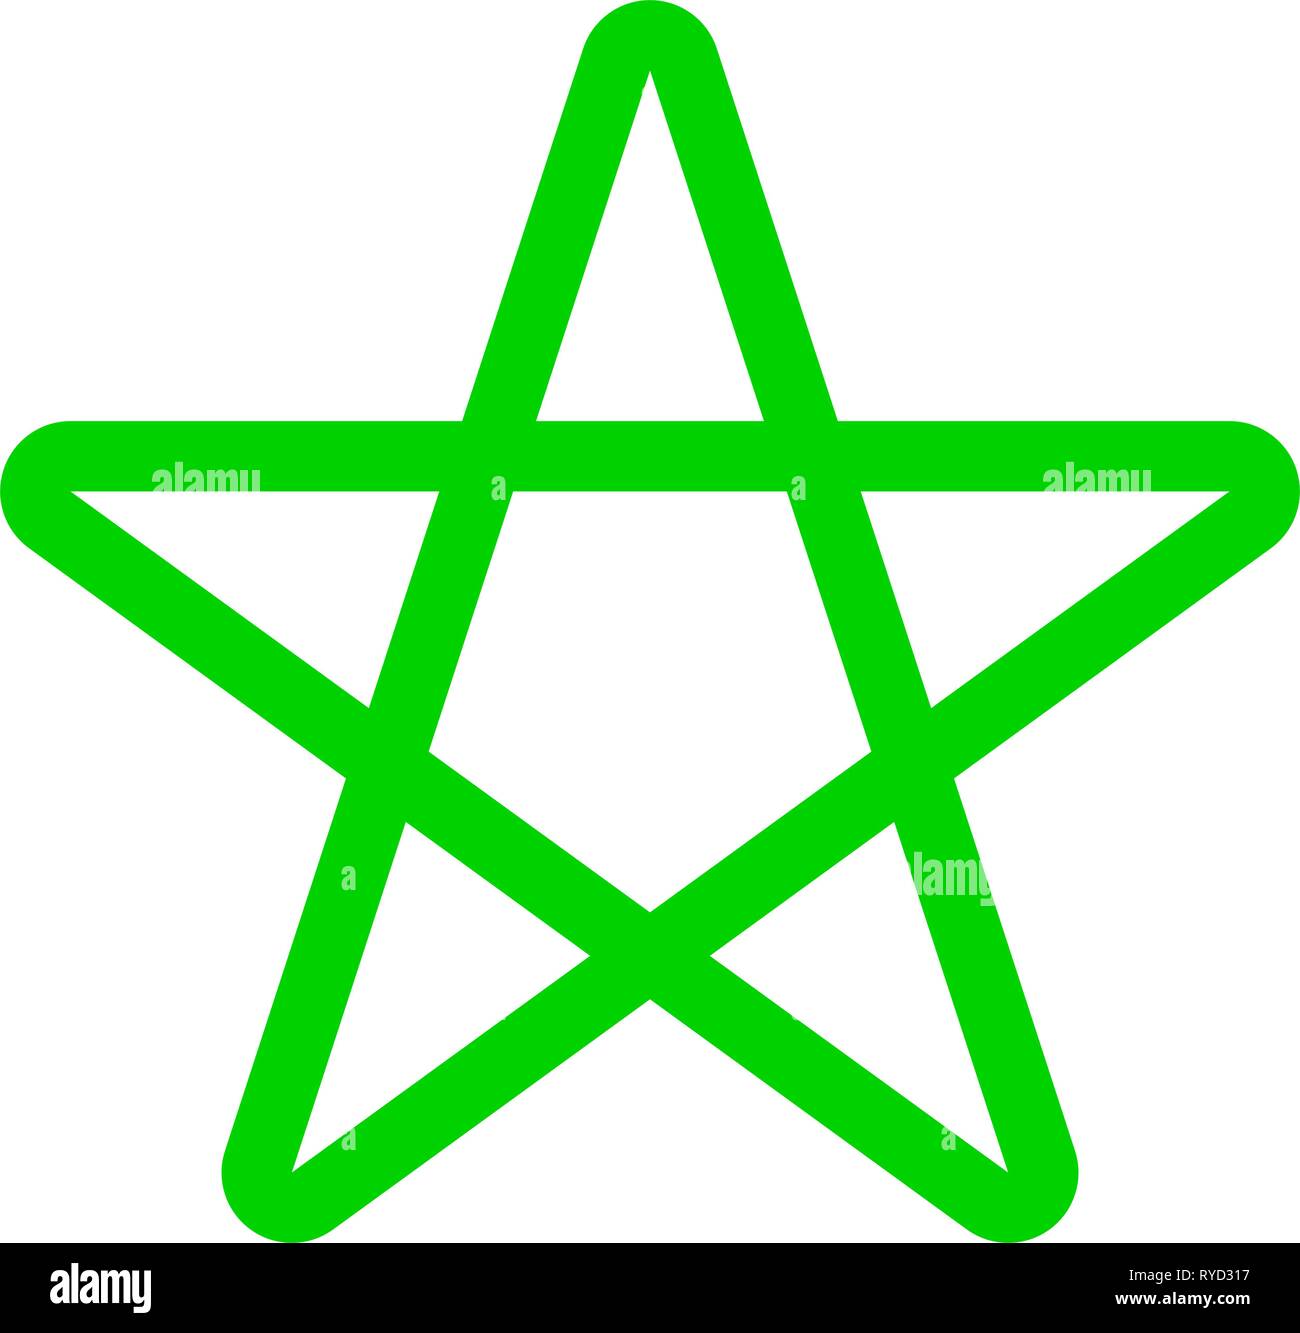 Five pointed star icon outline. Hiện tượng trên trang điện tử của bạn không thể thiếu những biểu tượng hình sao đầy thu hút, giống như mẫu Five pointed star icon outline này. Xem ngay hướng dẫn để sở hữu những hình sao độc đáo này.